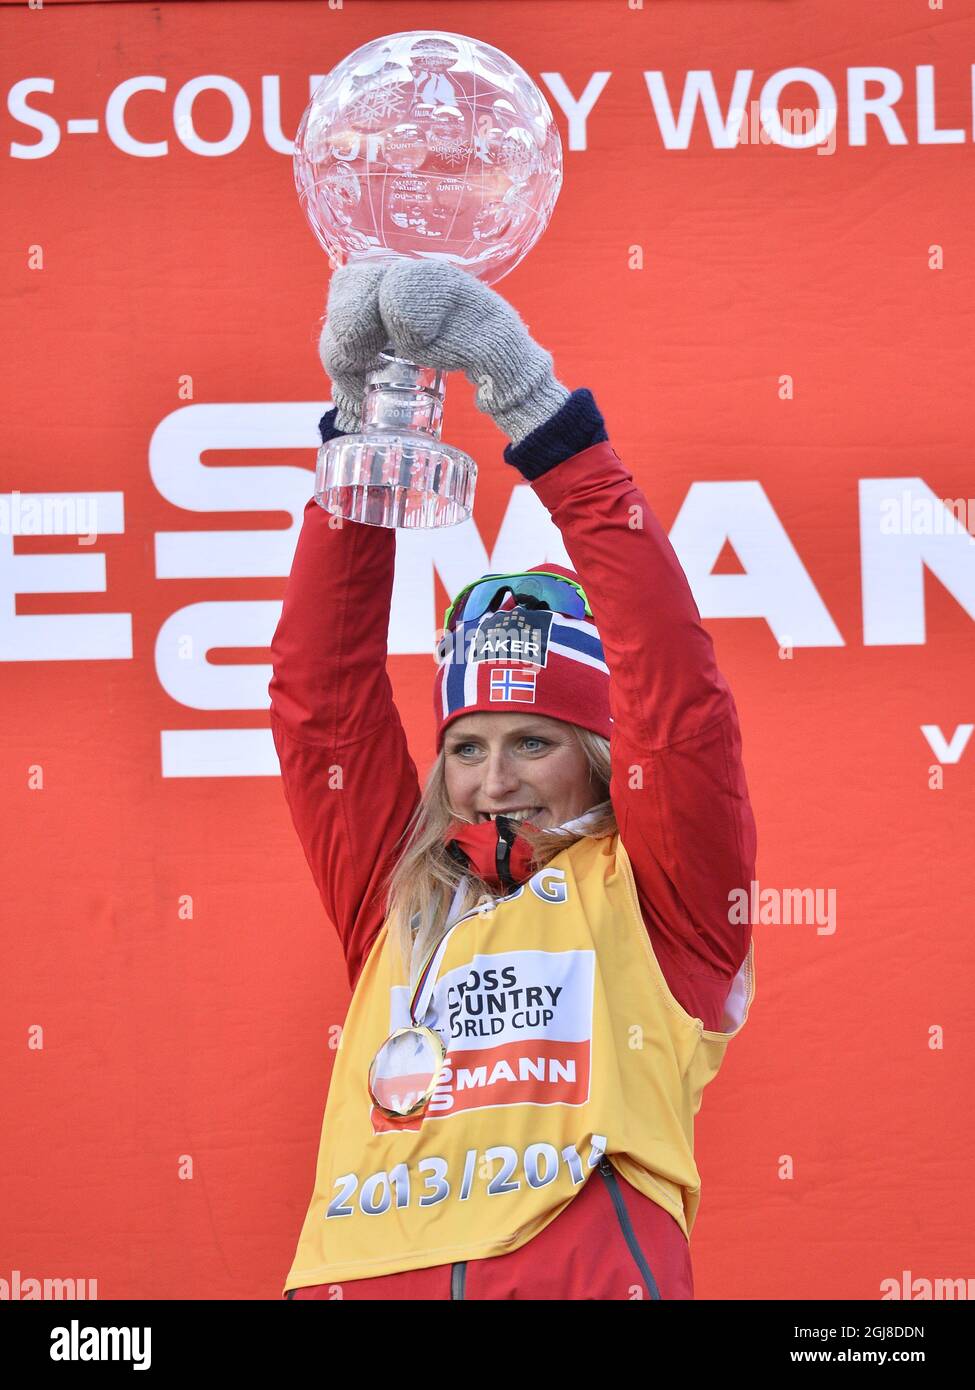 Therese Johaug, de Norvège, remporte le trophée en tant que vainqueur de la coupe du monde de ski féminin après la poursuite finale de 10 km à Falun, en Suède, le dimanche 16 mars 2014. Photo: Anders Wiklund / TT ** SUÈDE SORTIE ** Banque D'Images